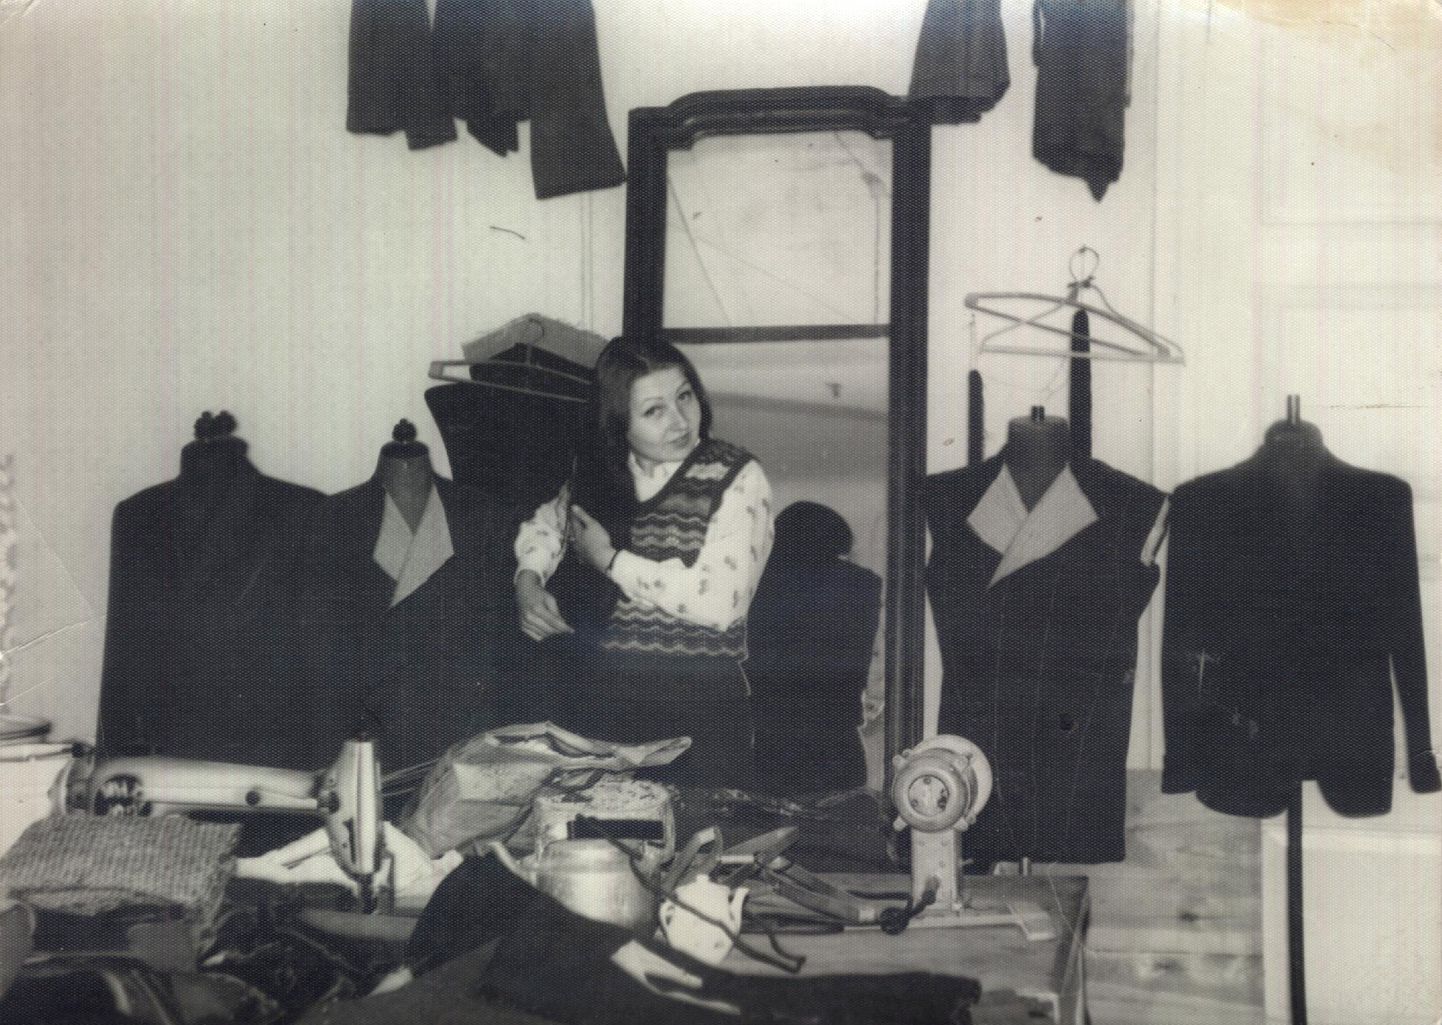 VOJENTORGI ÕMBLUSATELJEE: 1975. aastal tehtud fotol on Anne Raamat oma töölaua taga. Juhuse tahtel on tema selja taga olevate mannekeenidel ainult tsiviilülikonnad, ei ühtegi vormikuube.
3x Erakogu